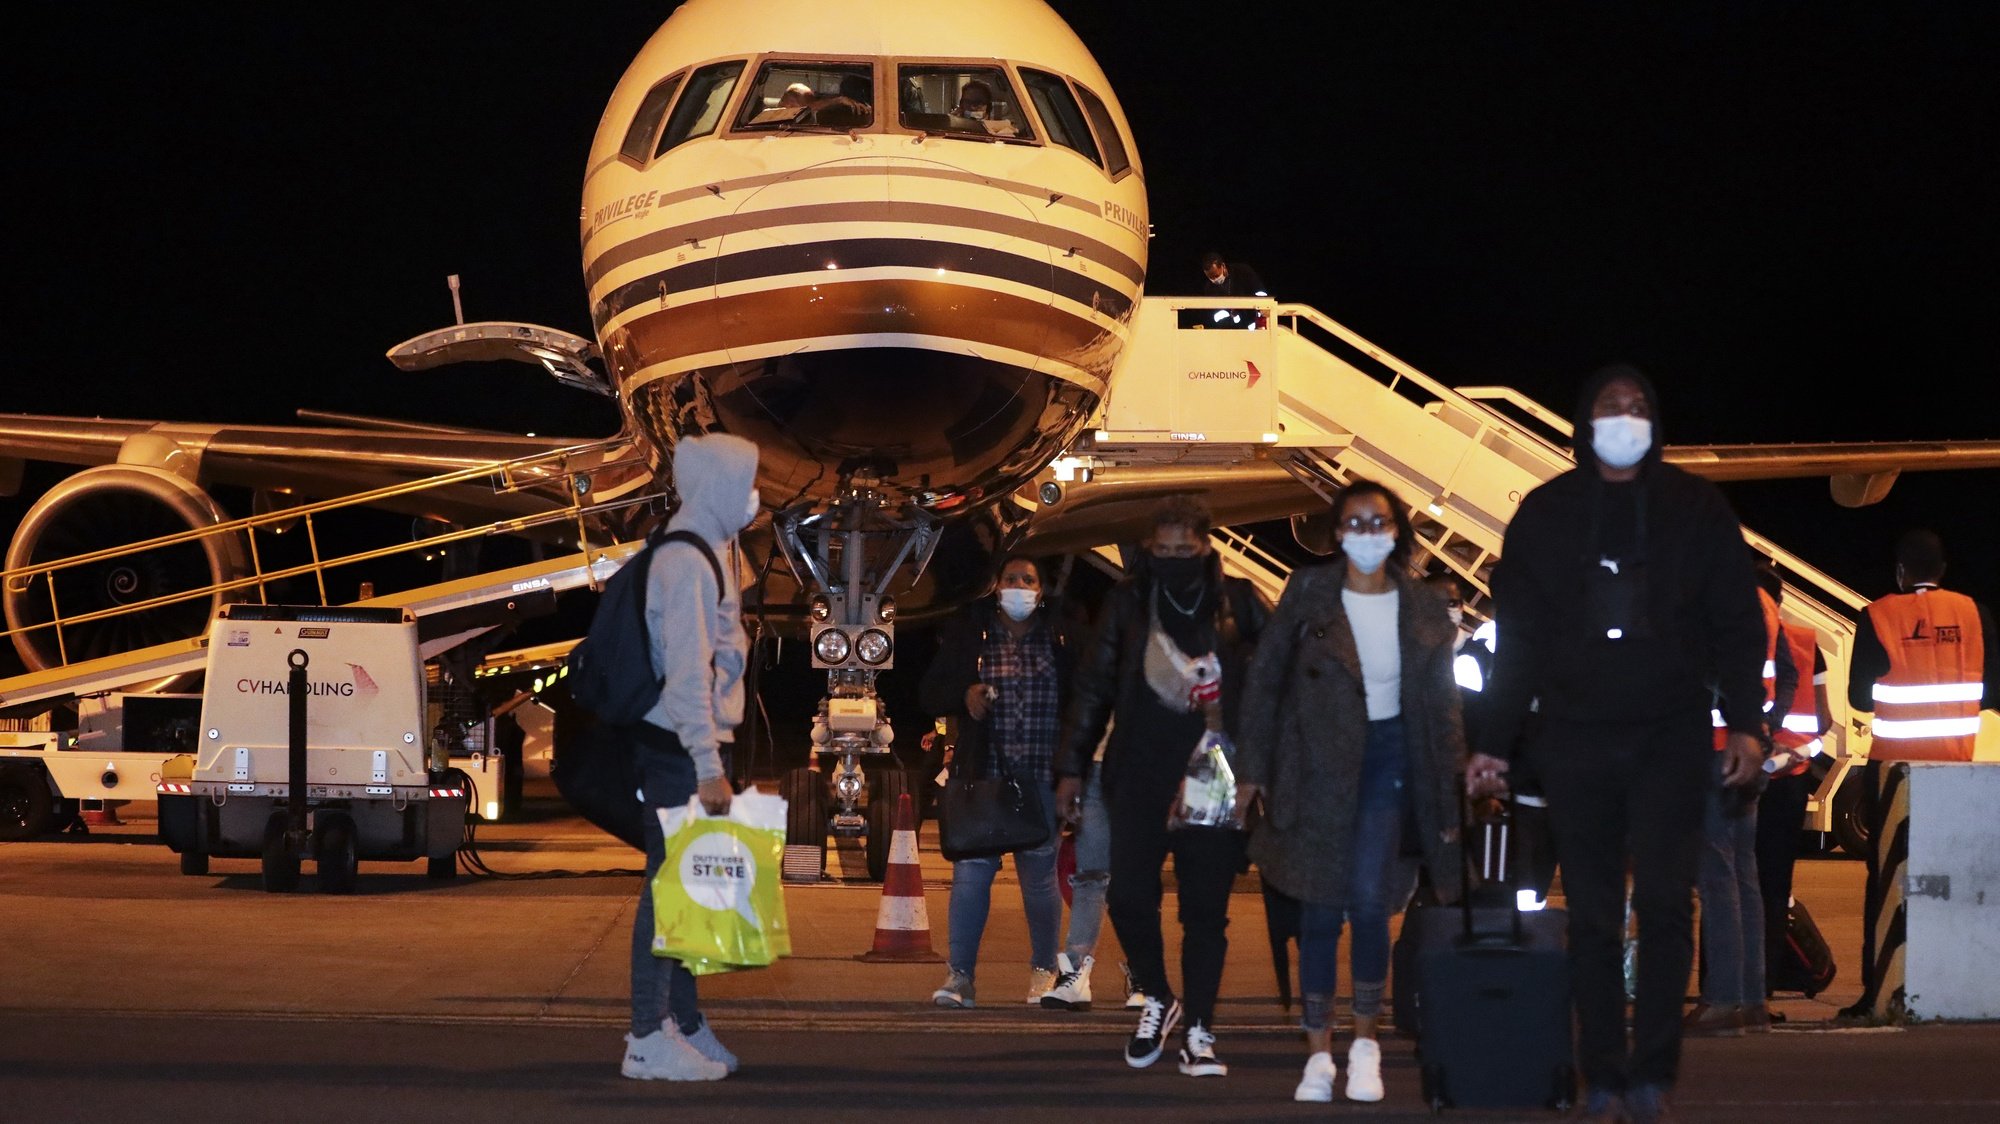 Passageiros saiem do avião da TACV - Transportes Aéreos de Cabo Verde S.A., no dia da  retoma dos voos 19 meses depois, no aeroporto internacional da Praia, Cidade da Praia, Cabo Verde, 27 de dezembro de 2021. ELTON MONTEIRO/ LUSA